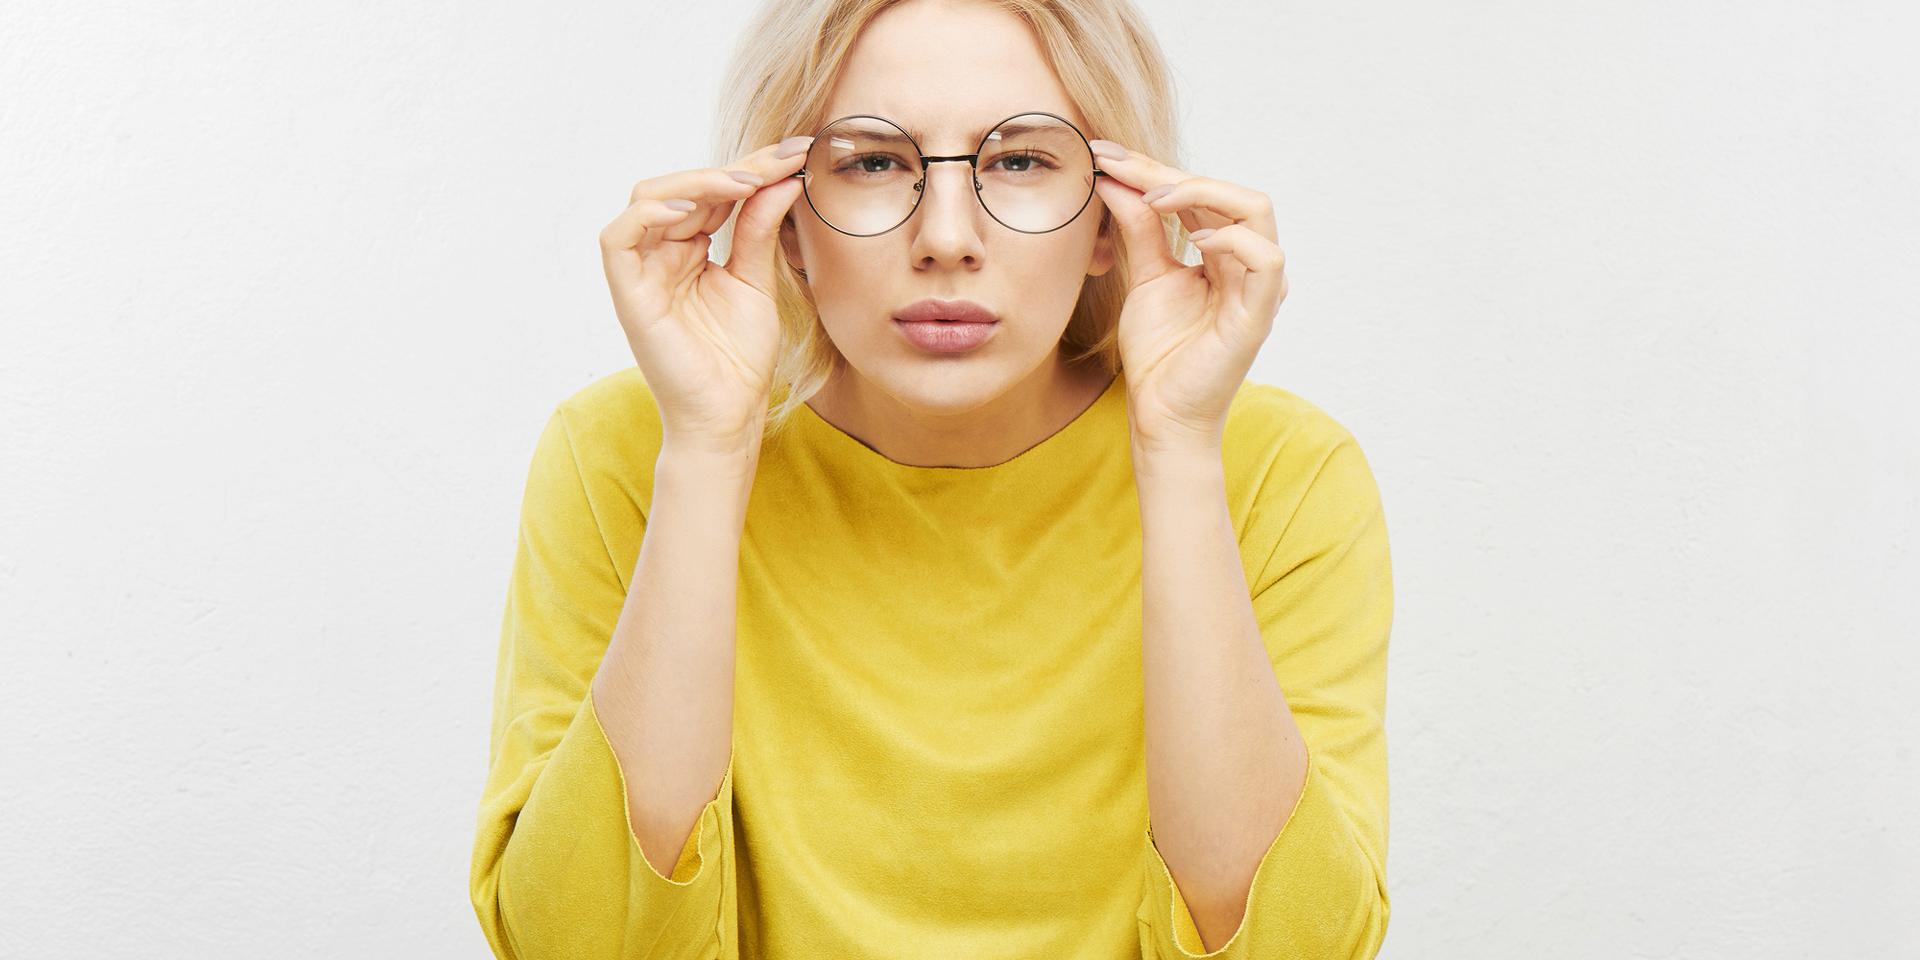 Les traitements antireflet des verres de lunettes devraient être en mesure de répondre à tous les besoins